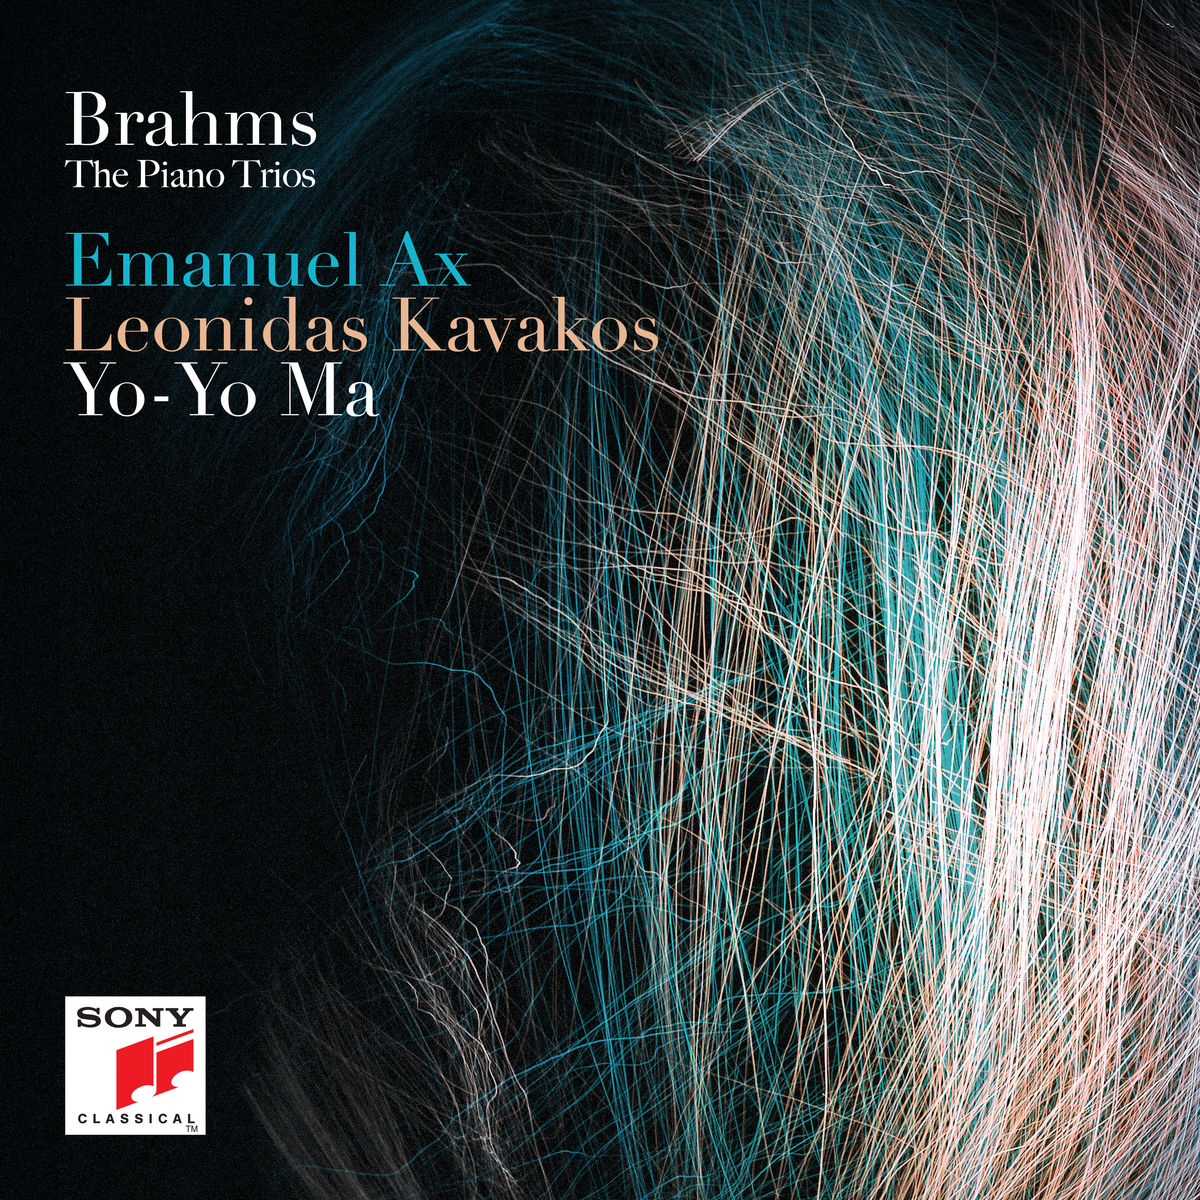 Emanuel Ax, Leonidas Kavakos & Yo-Yo Ma - Brahms: The Piano Trios (2017) [Qobuz FLAC 24bit/96kHz]